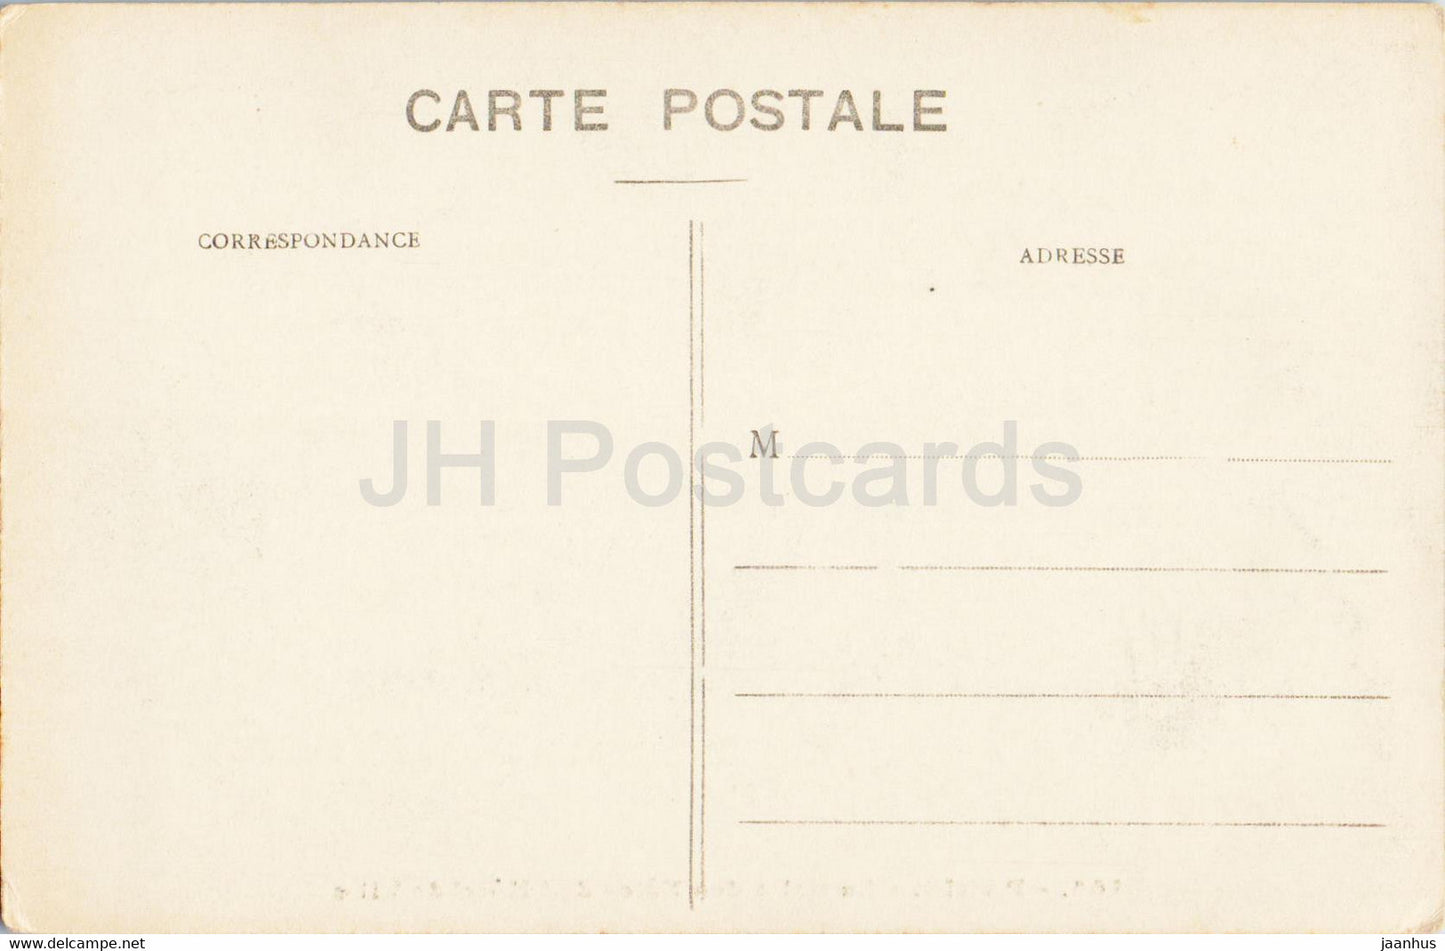 Paris - La Salle des Fetes de l'Hotel de Ville - 166 - old postcard - France - unused